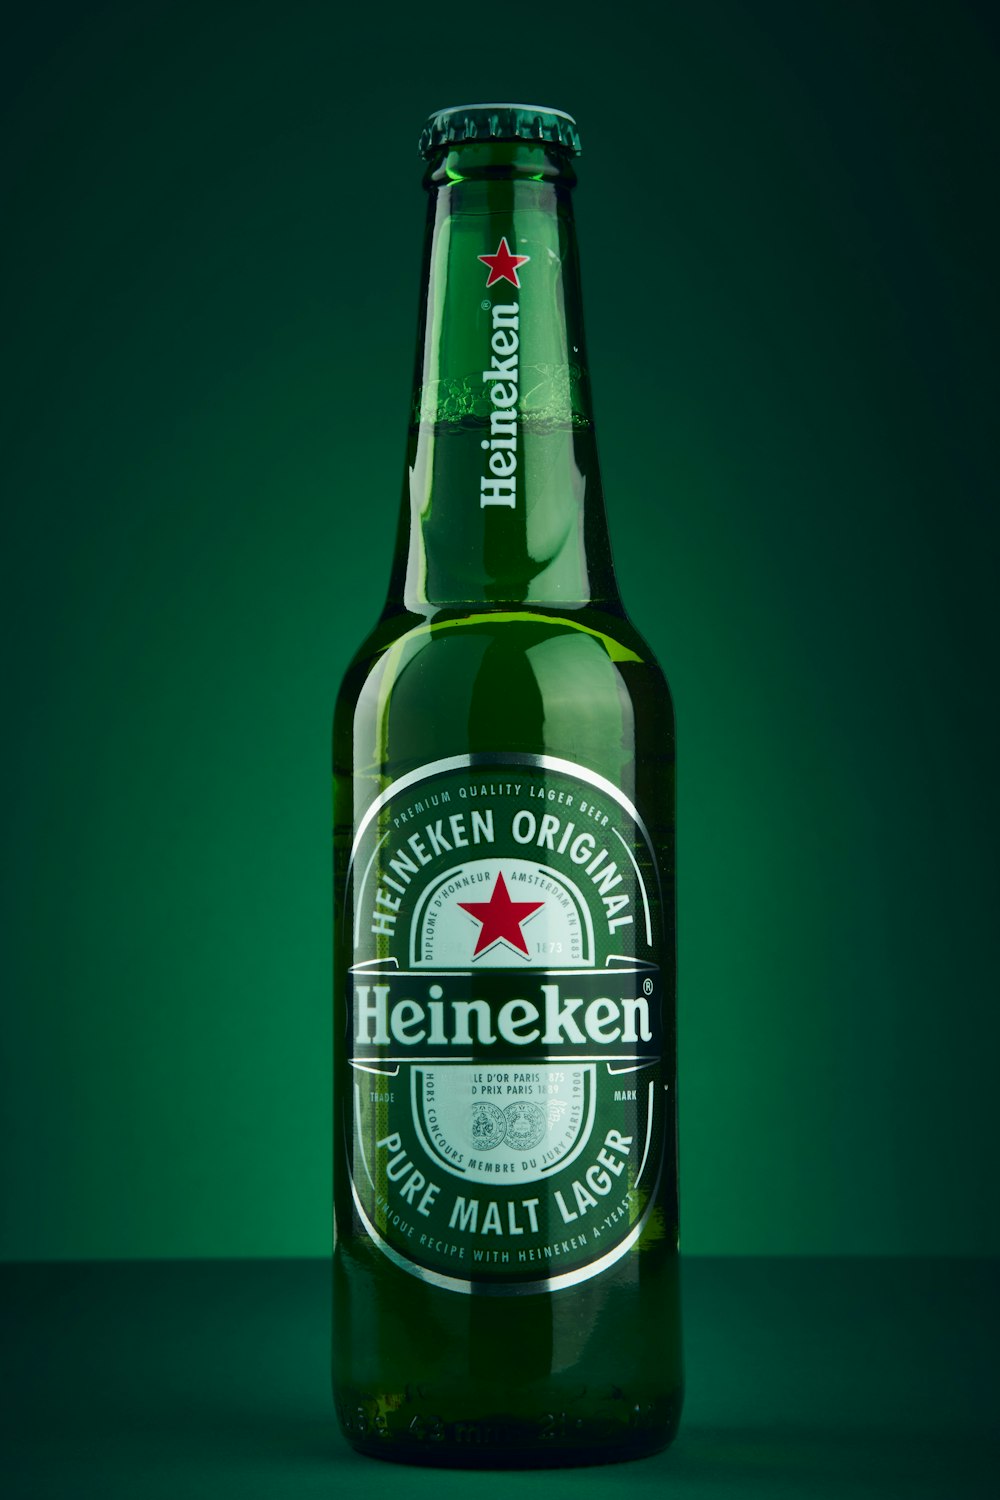 Heineken Bierflasche auf grünem Untergrund